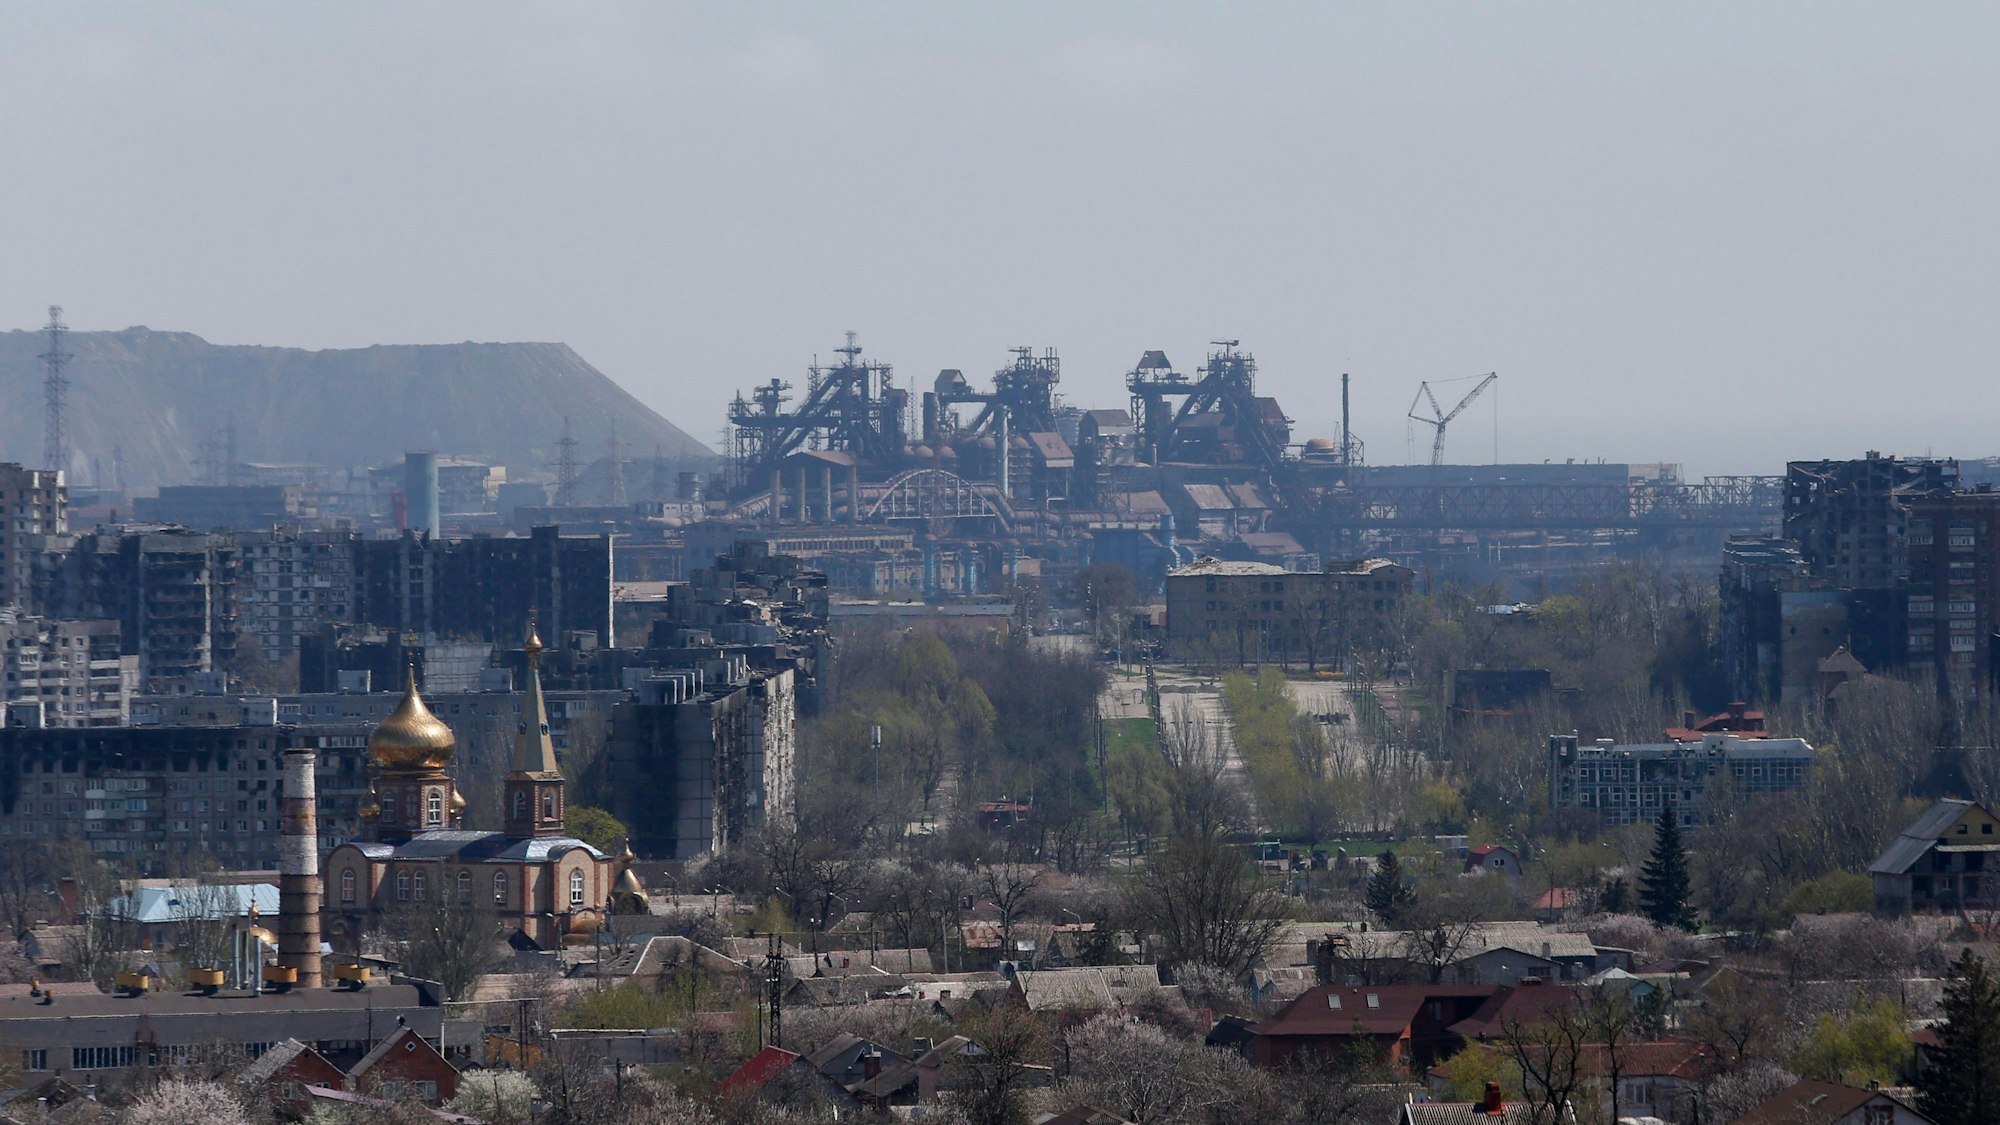 Blick auf das Asovstal-Werk in der Hafenstadt Mariupol. Hier haben sich zahlreiche Kämpferinnen und Kämpfer sowie zivile Personen verschanzt.